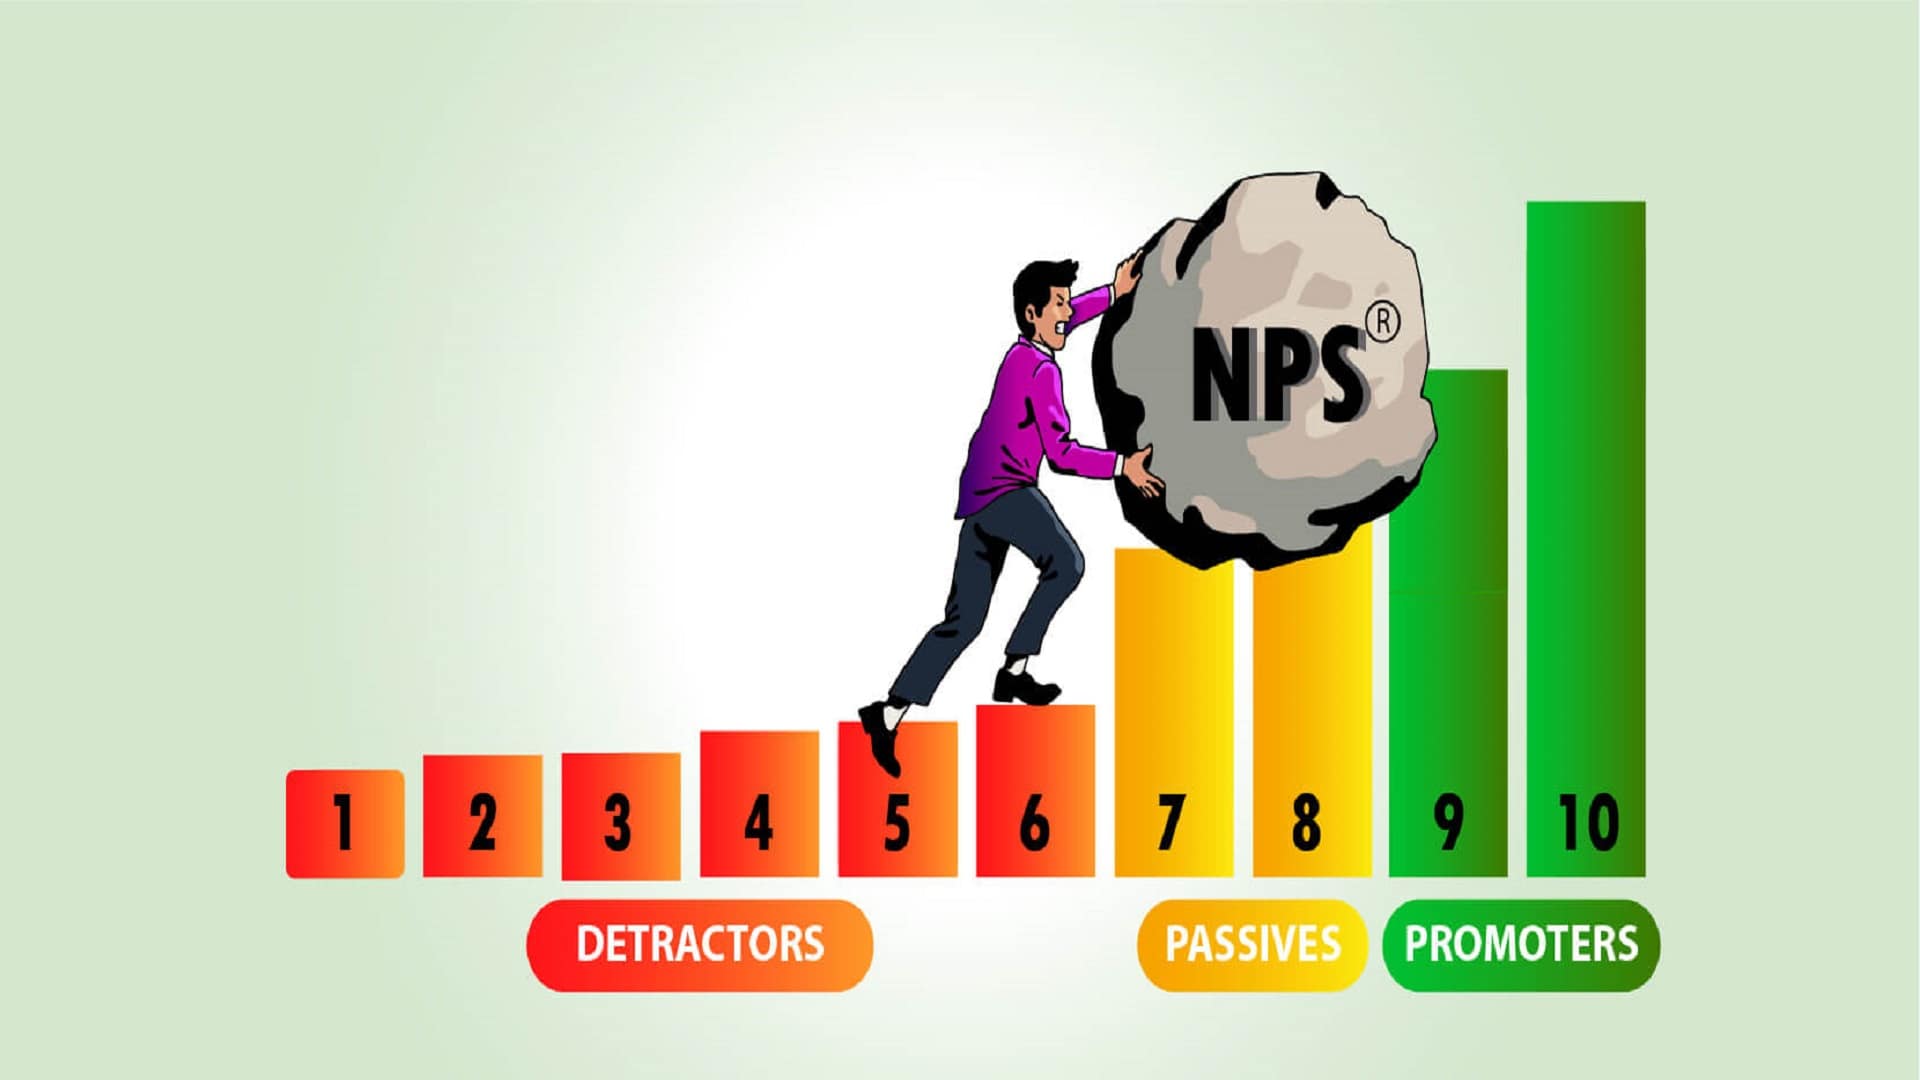 Key Performance Indicator of Net Promoter Score (NPS)